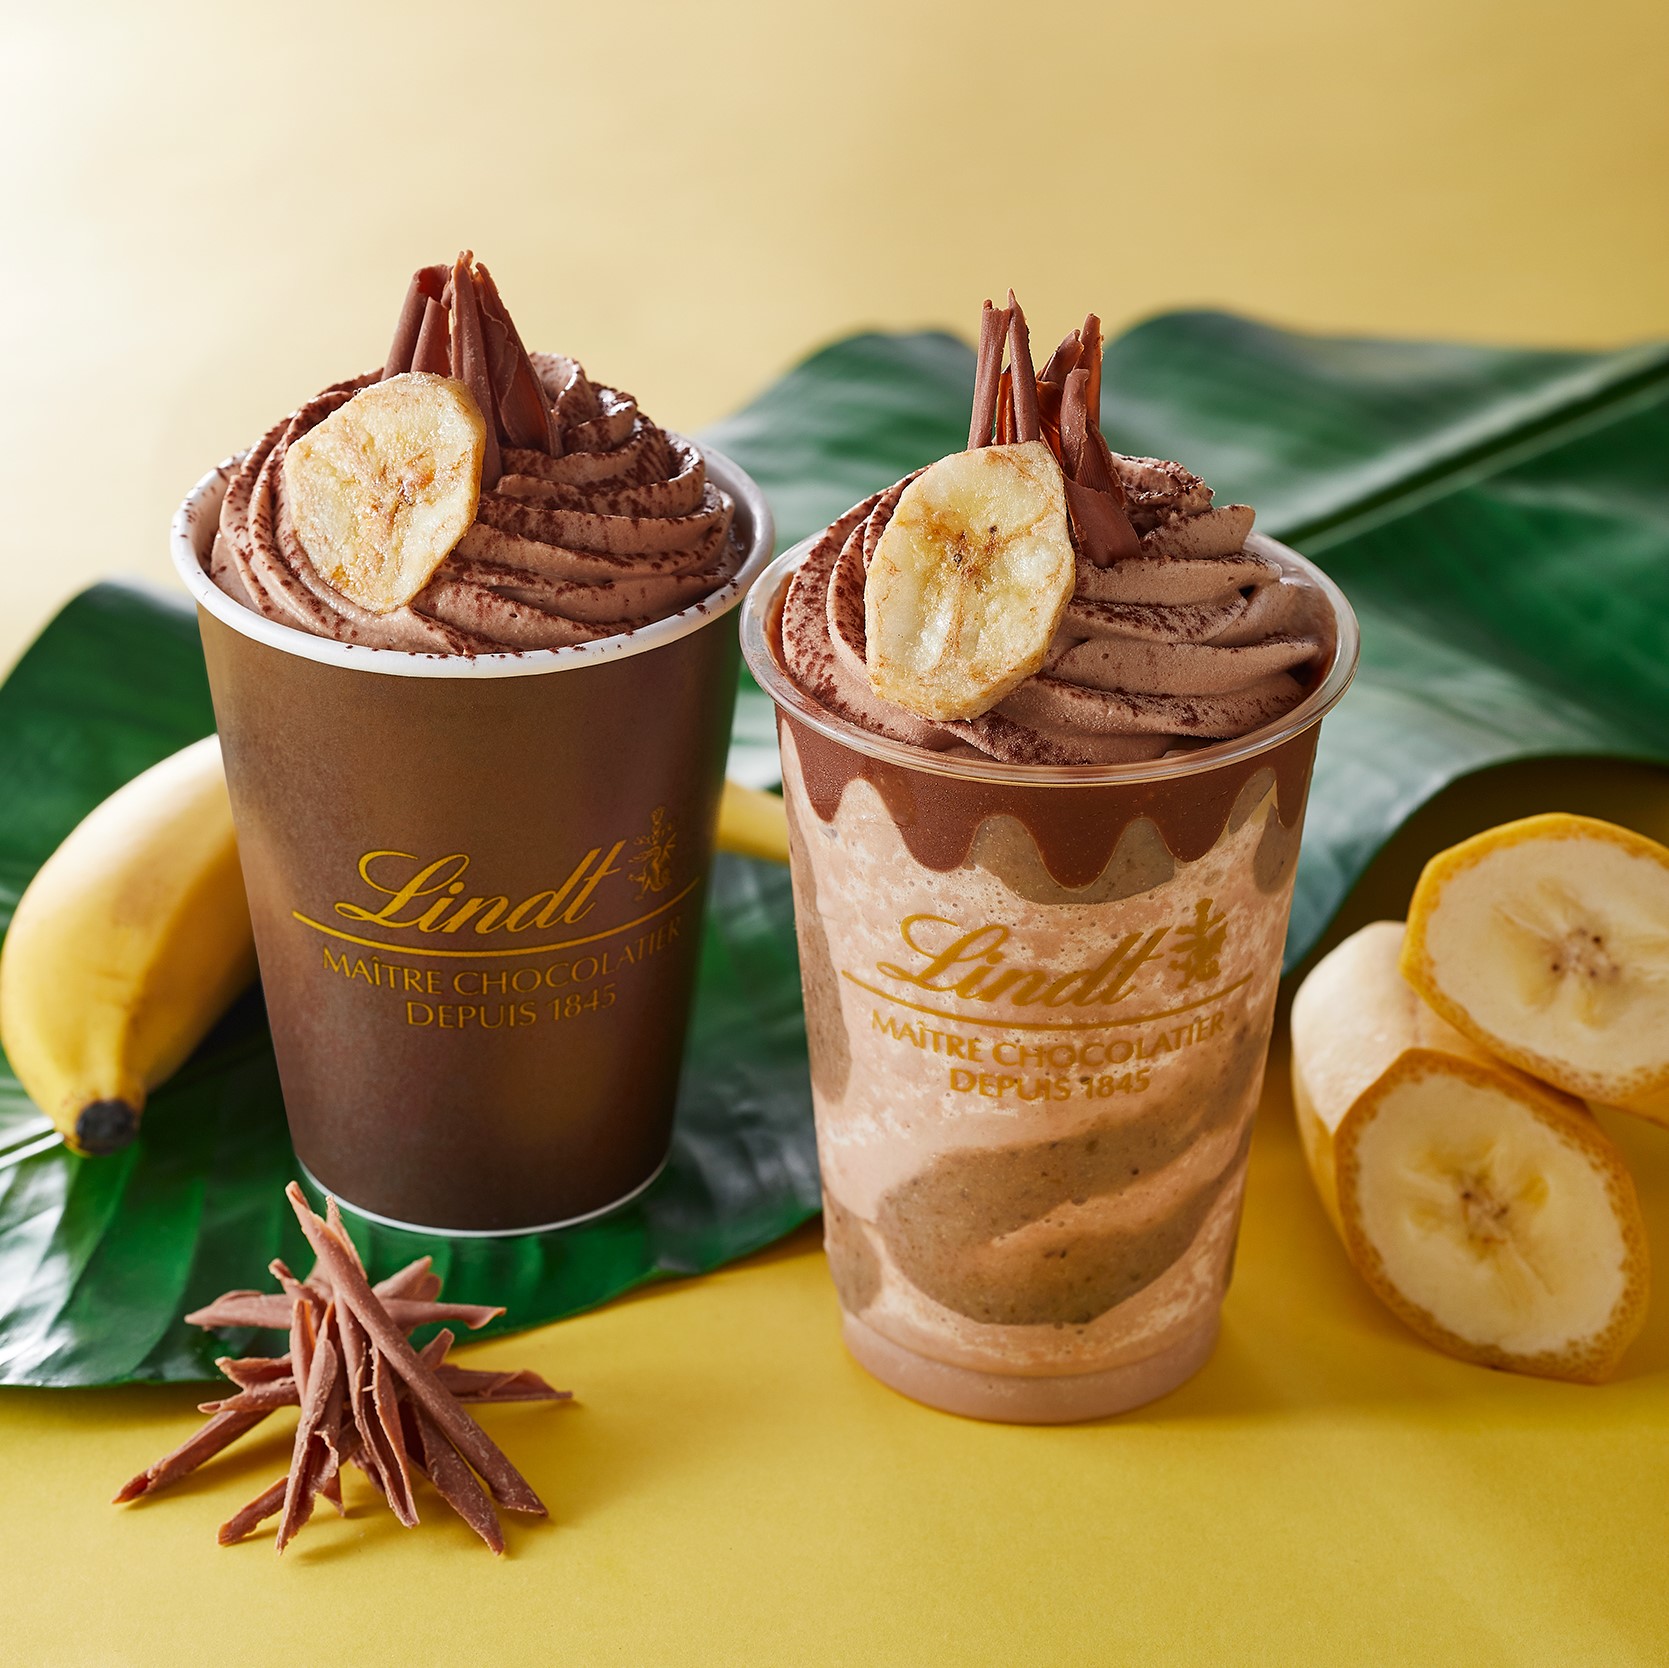 チョコレートドリンク バナナ 7月1日新発売 ドリンクキャンペーンも開催 リンツ ショコラ カフェ